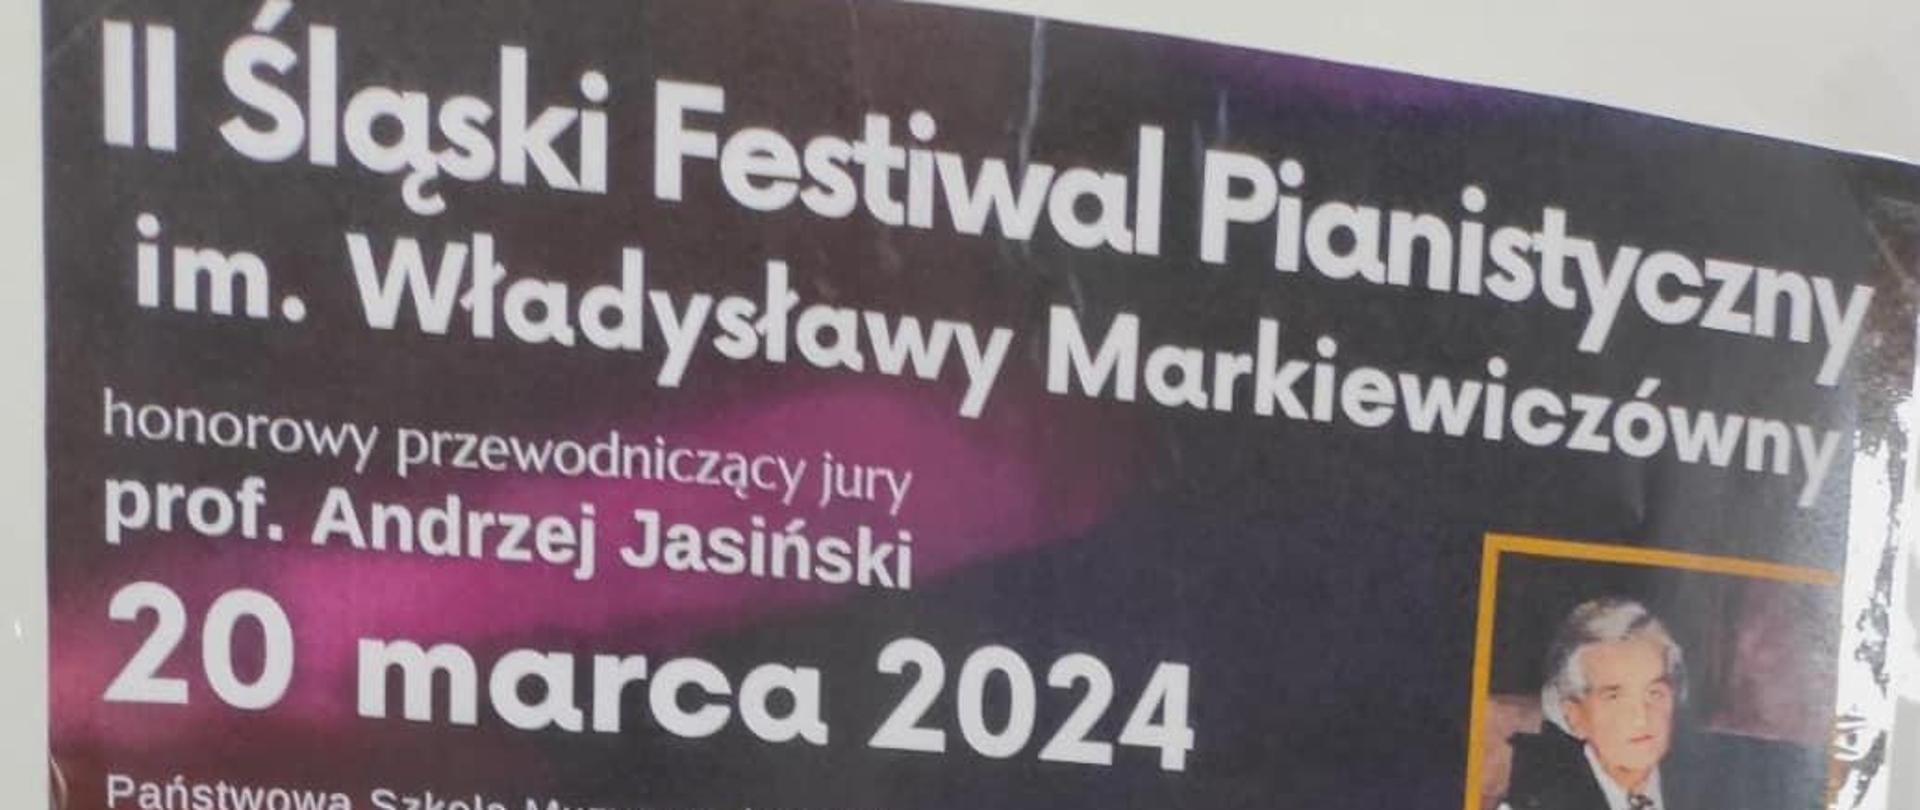 Plakat II Śląski Festiwal Pianistyczny